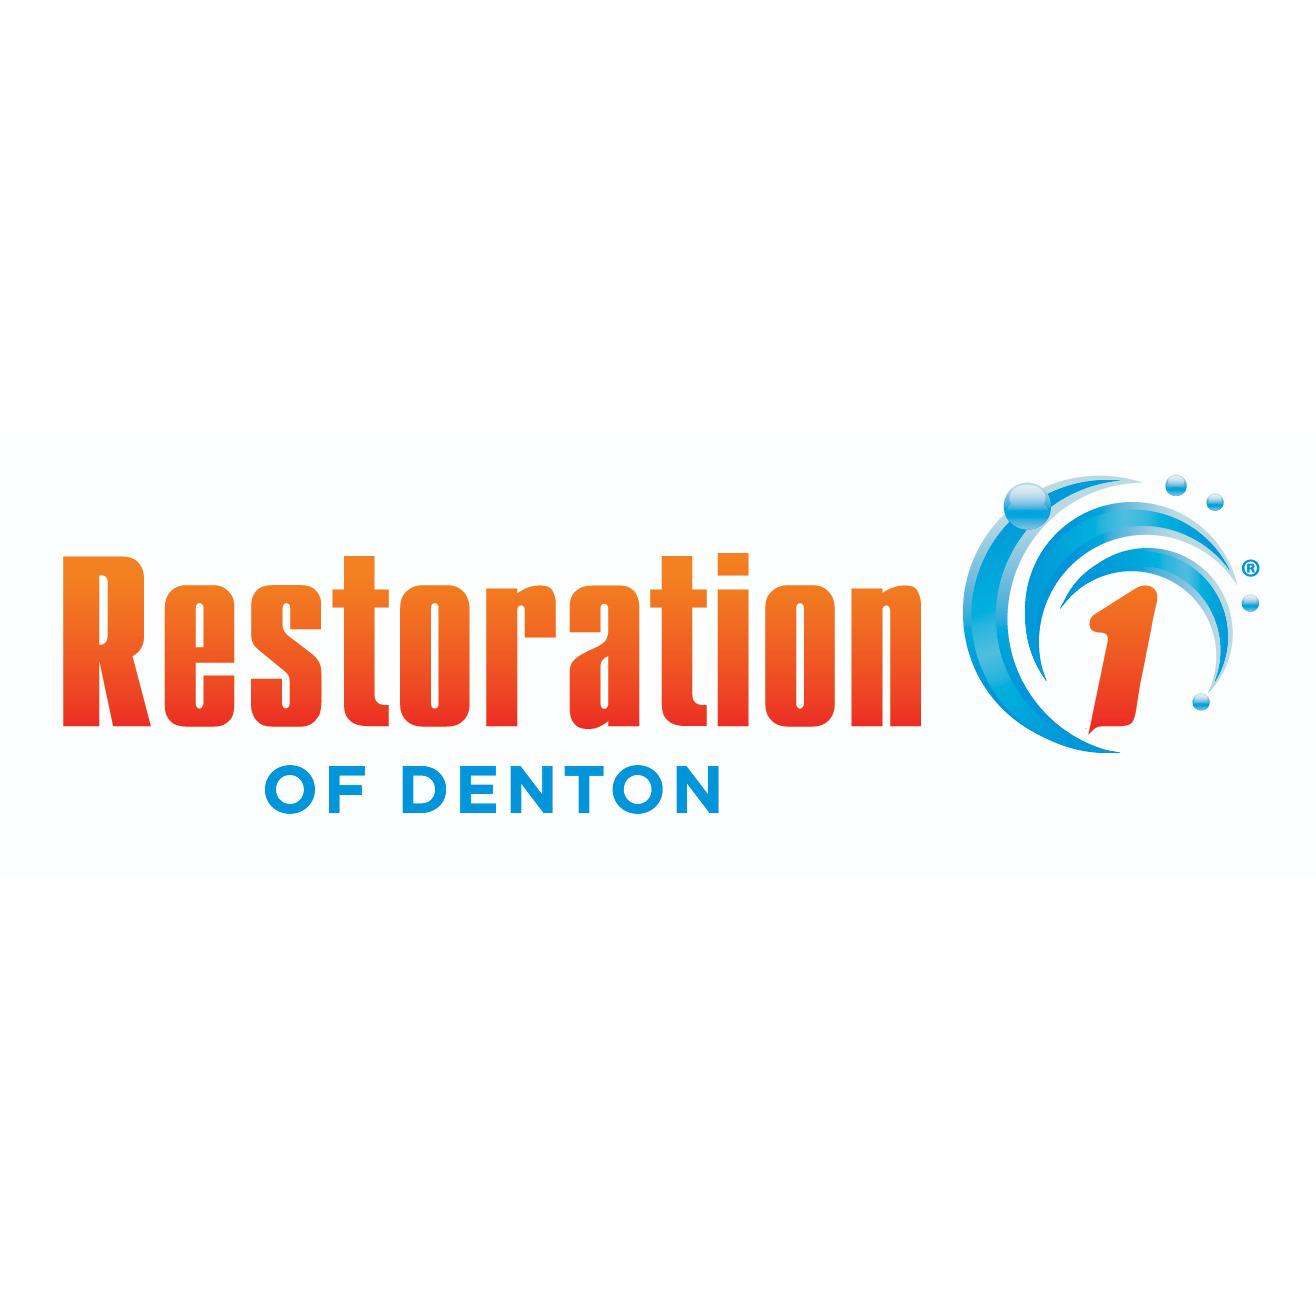 Restoration 1 of Denton